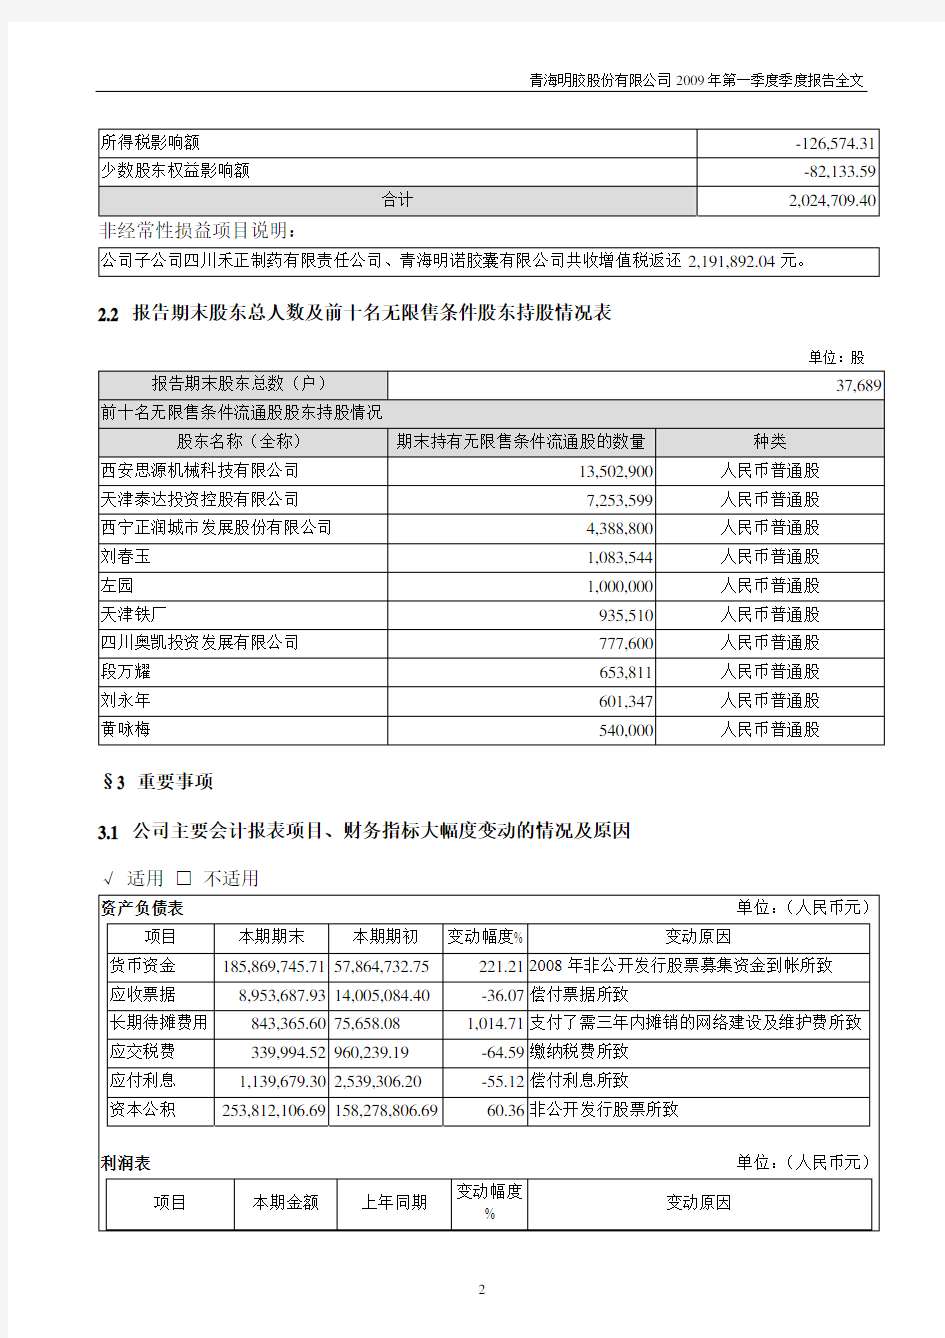 青海明胶股份有限公司2009年第一季度季度报告全文